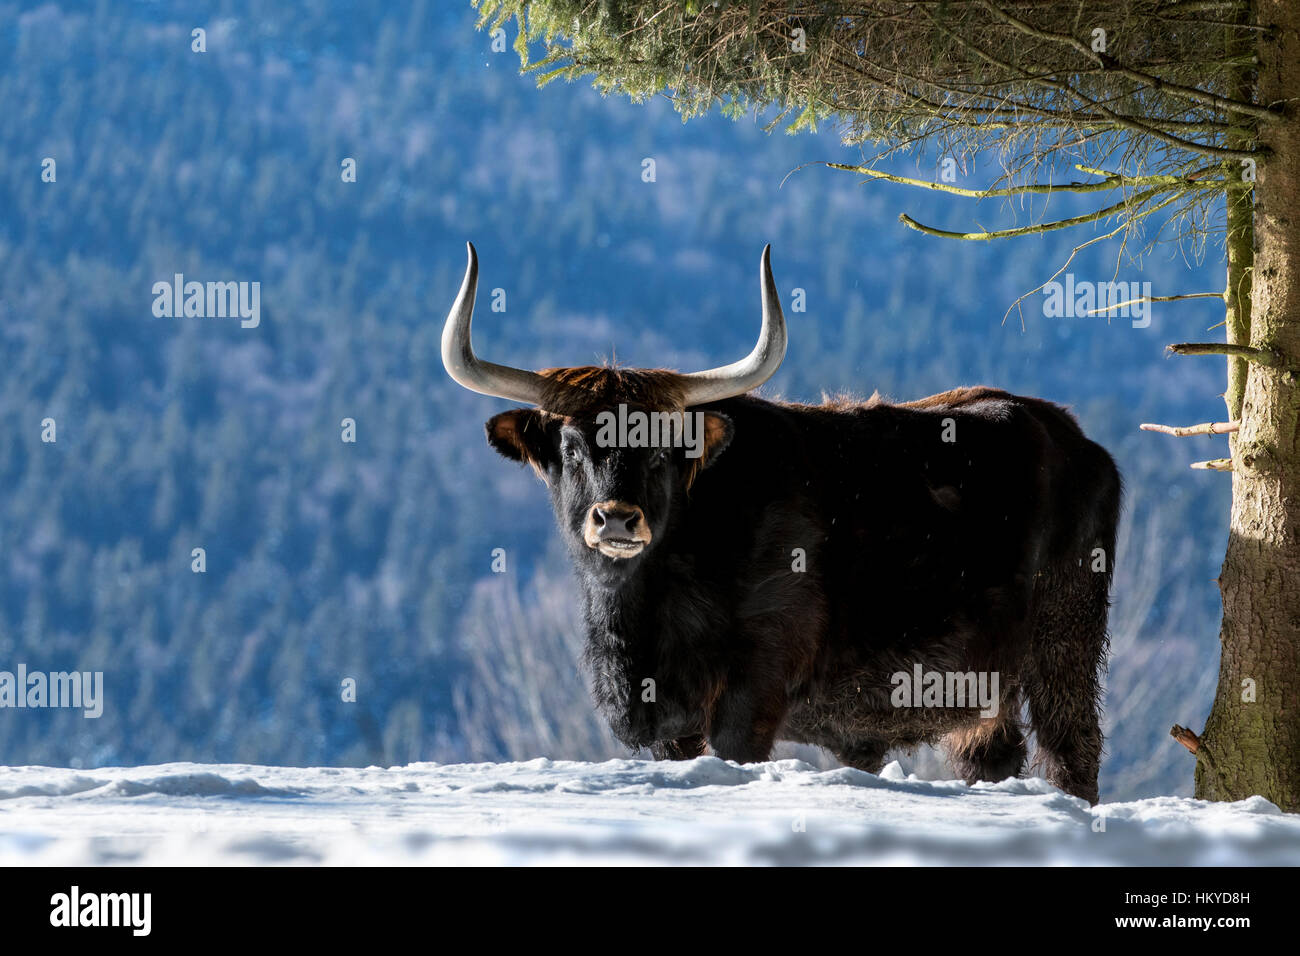 Heck ganado (Bos domesticus) bull bajo el árbol en la nieve en invierno. Intente volver a criar los extintos uros (Bos primigenius) Foto de stock